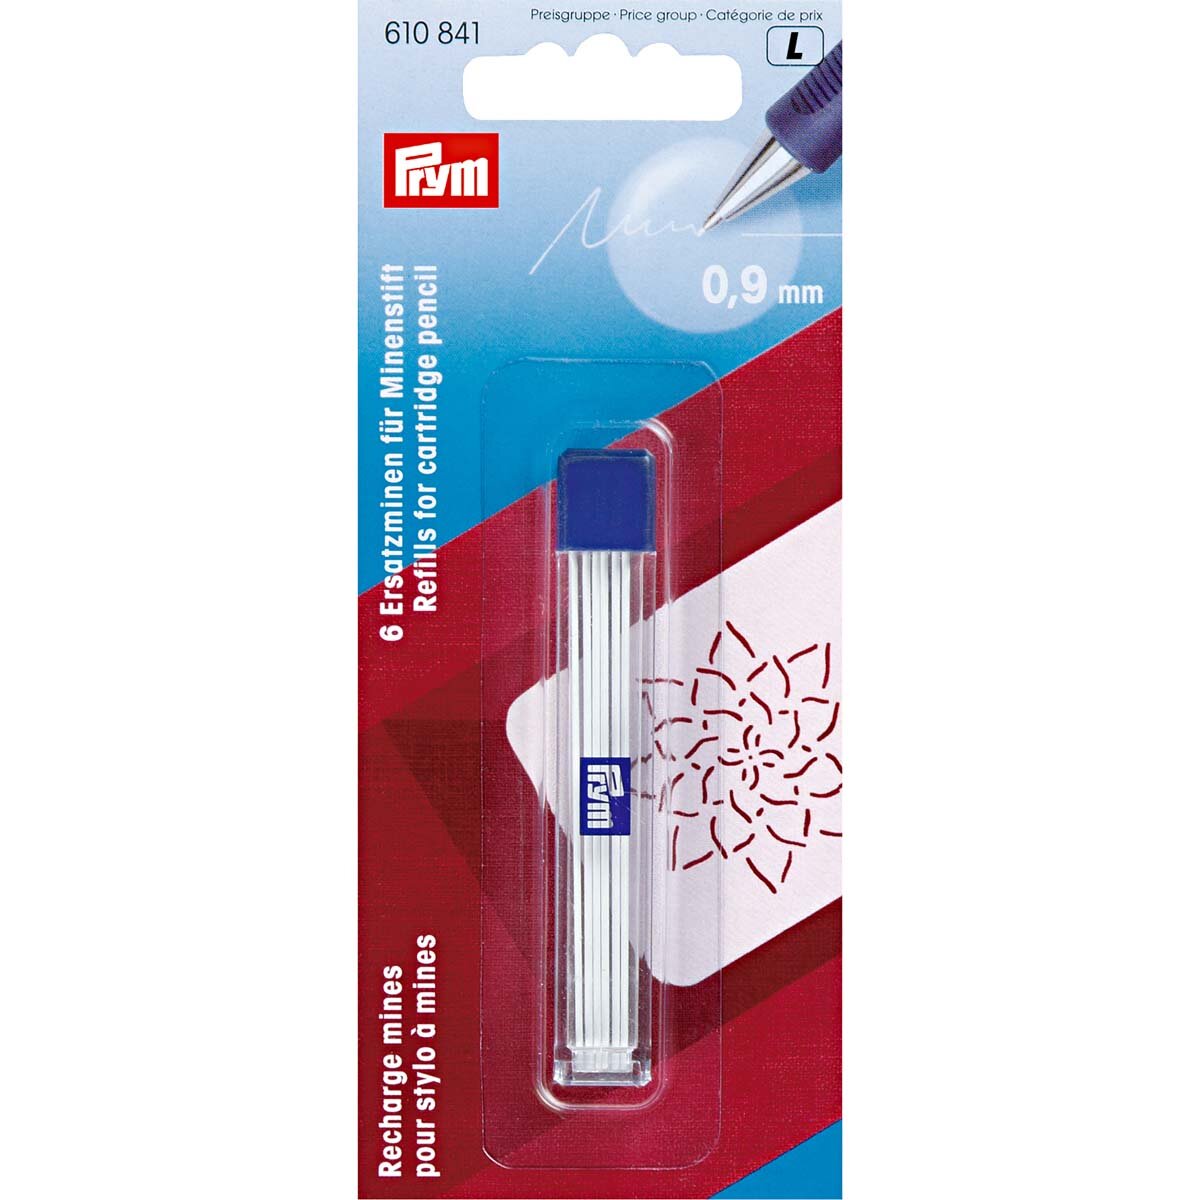 Запасные графиты для механического карандаша PRYM, 0.9 мм, белый, 610841